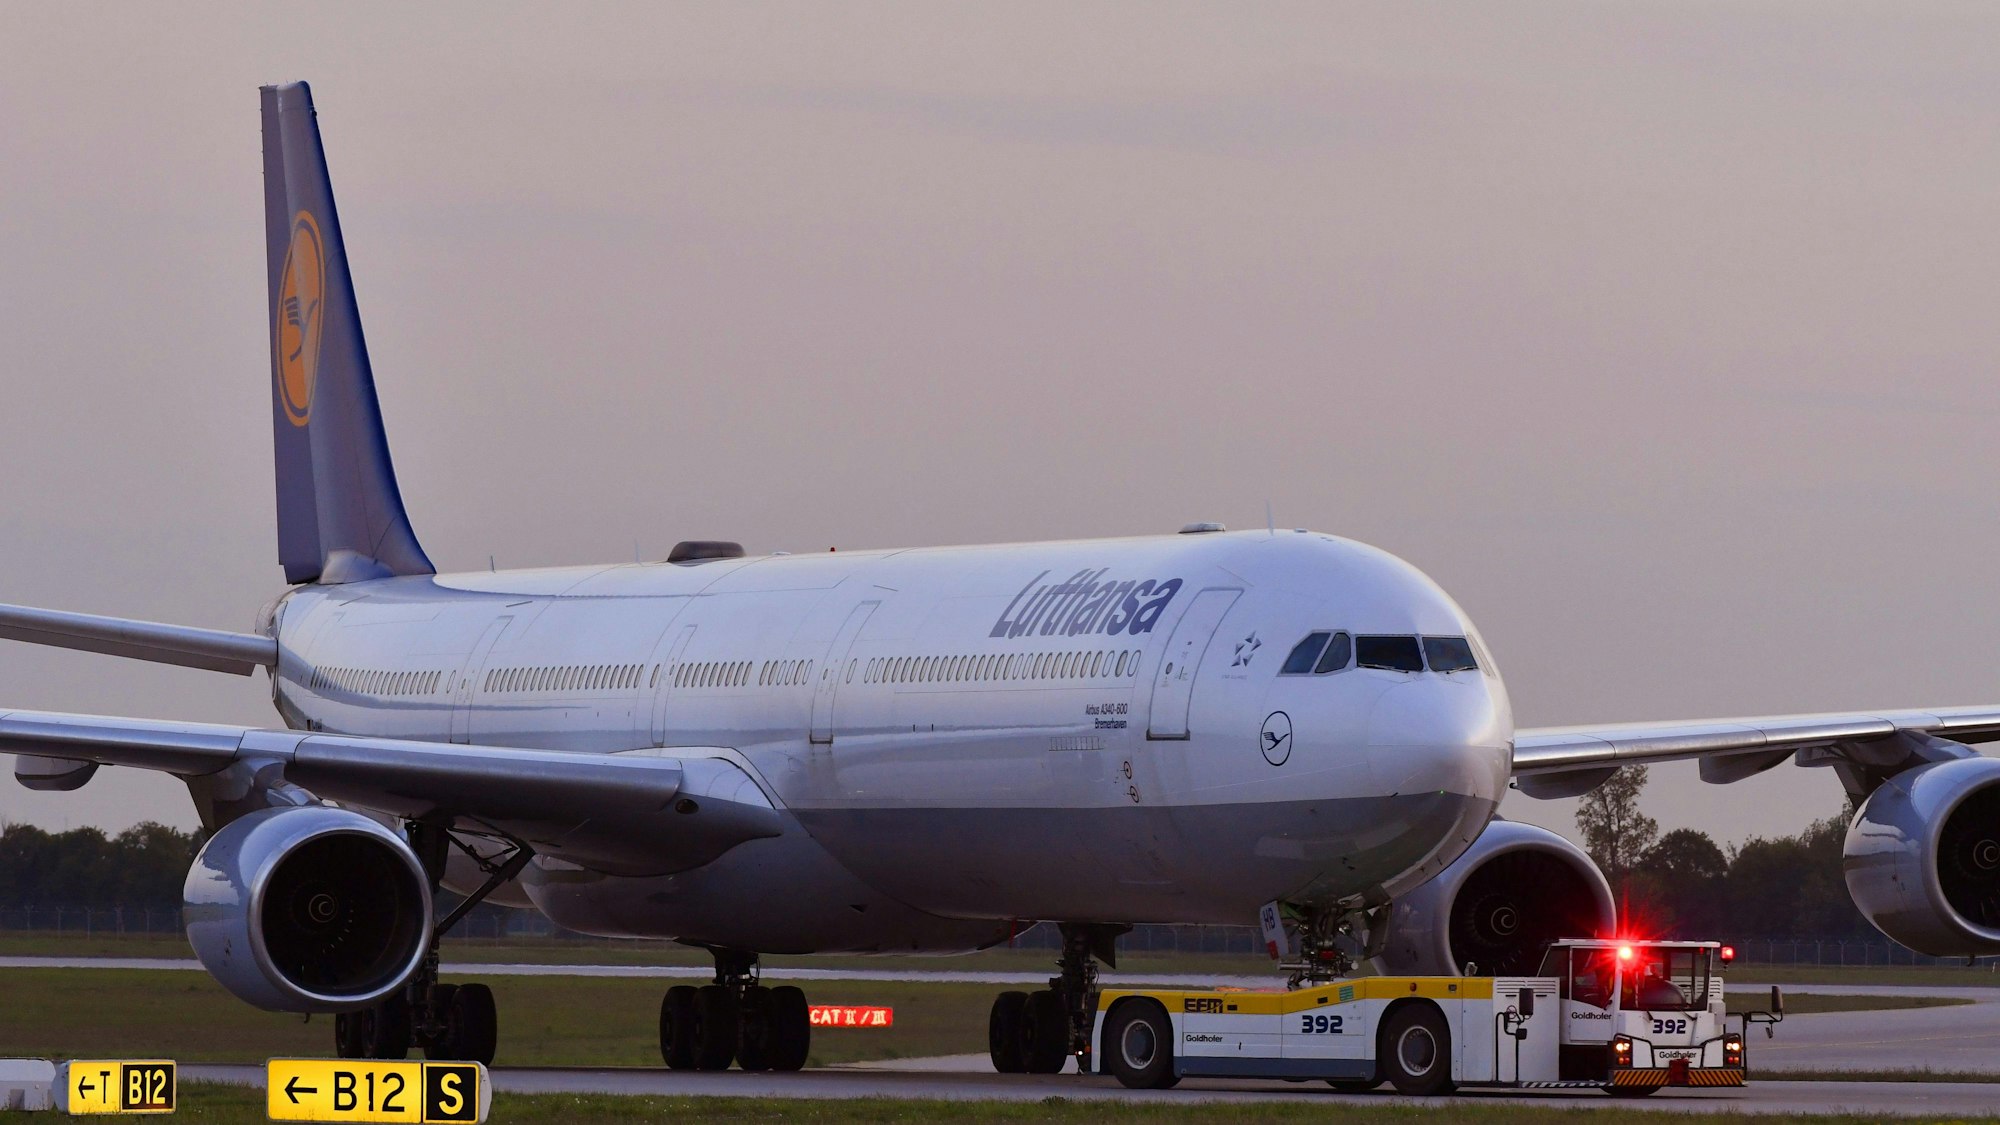 Ein Airbus A340 der Lufthansa wird auf dem Flughafen München von einem Fahrzeug gezogen. Mehrere Warnleuchten sind angeschaltet. (Symbolbild)